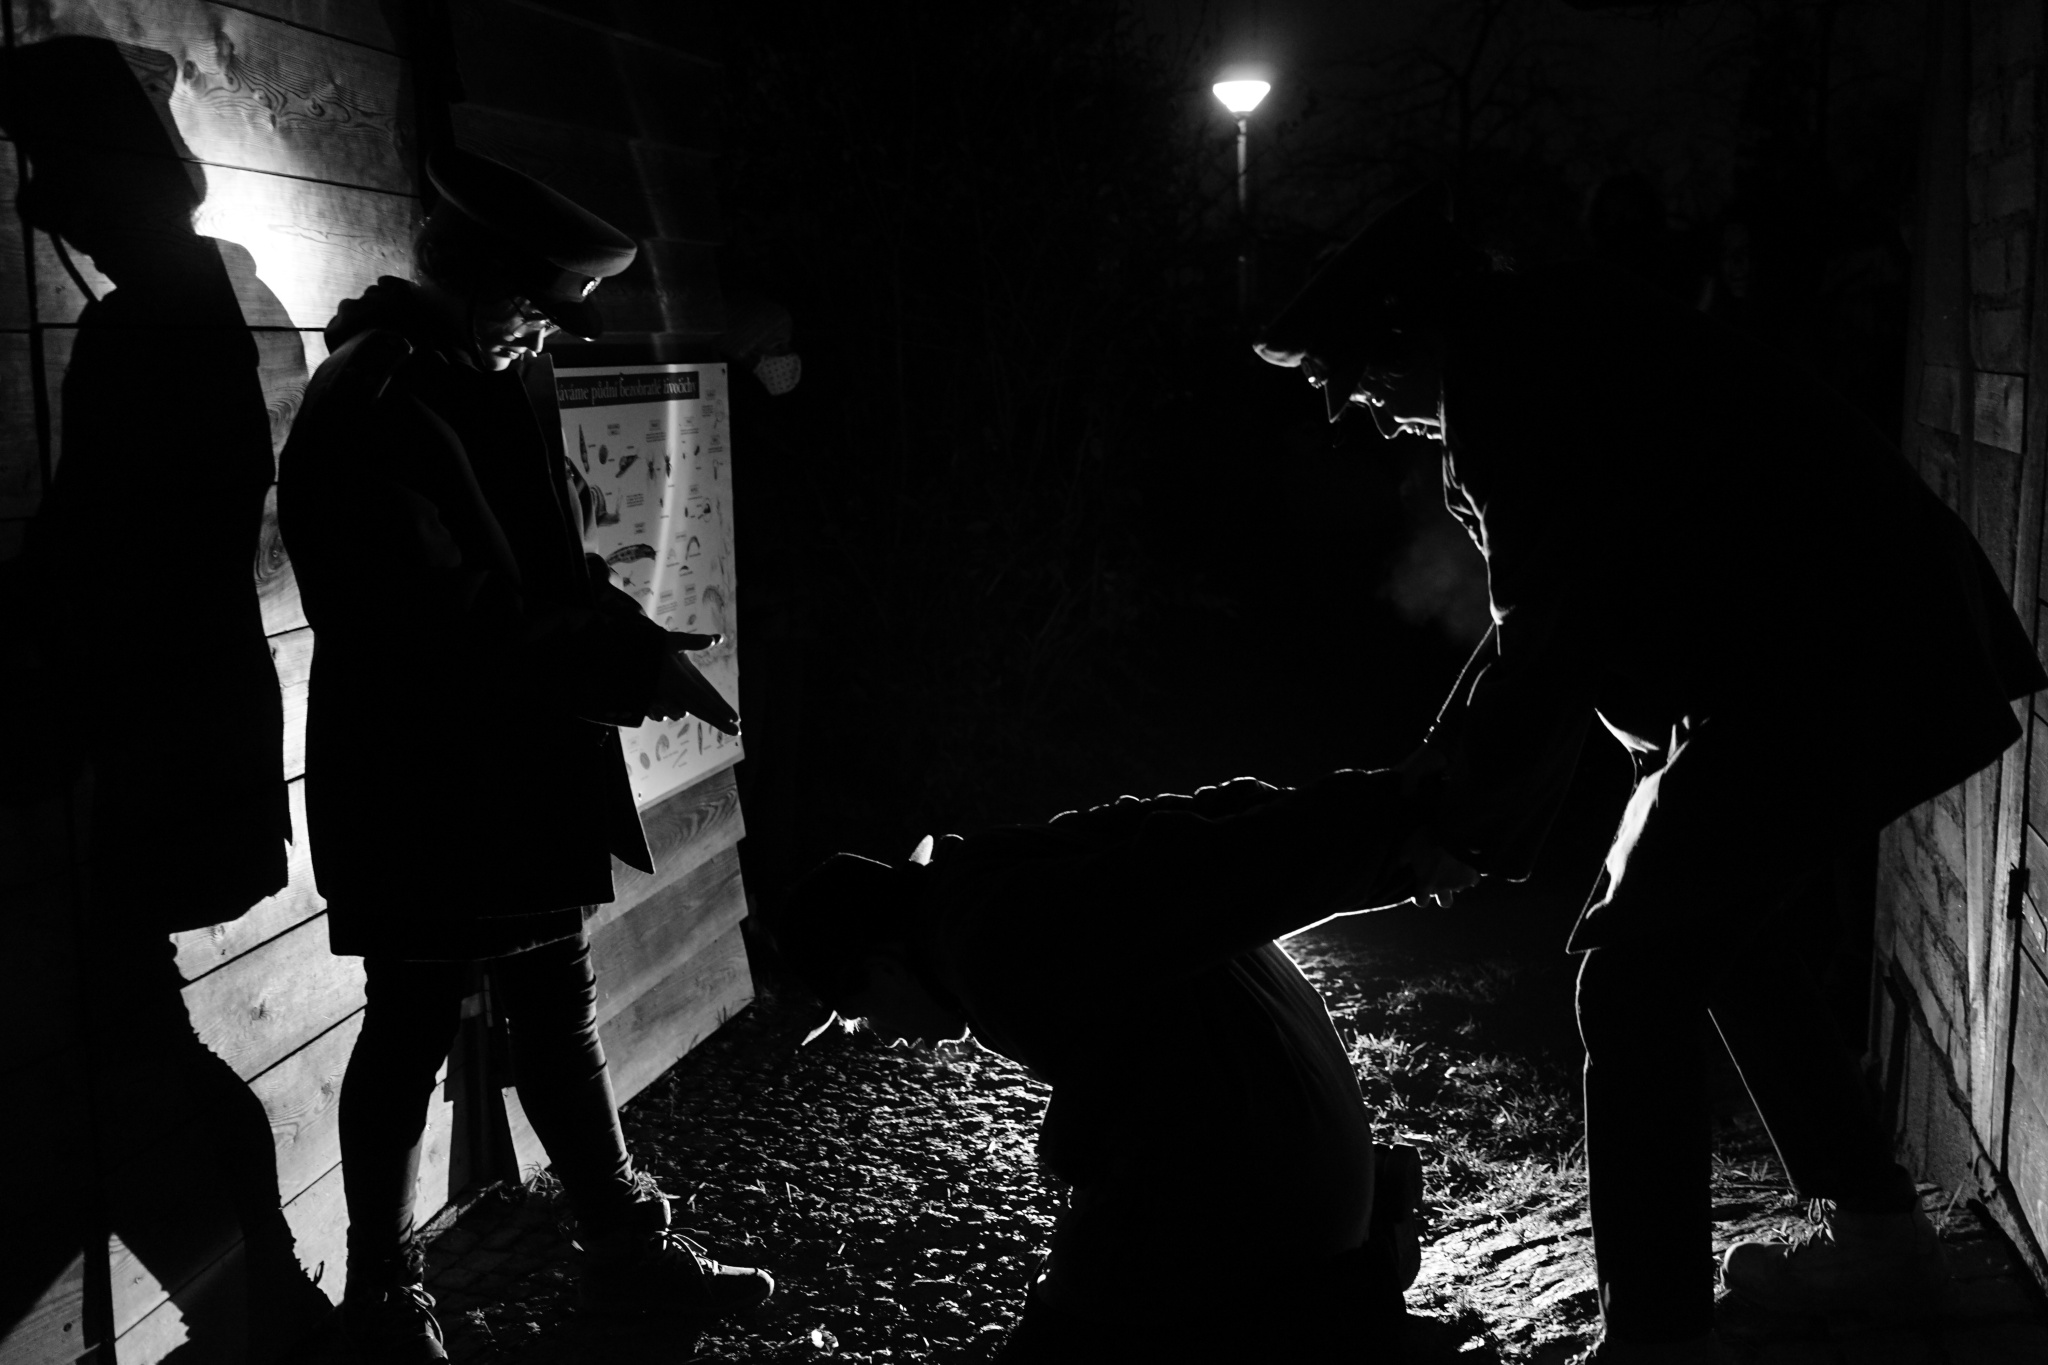 Nach Einbruch der Dunkelheit erblüht das Verbrechen - Fotografie im Film Noir Stil